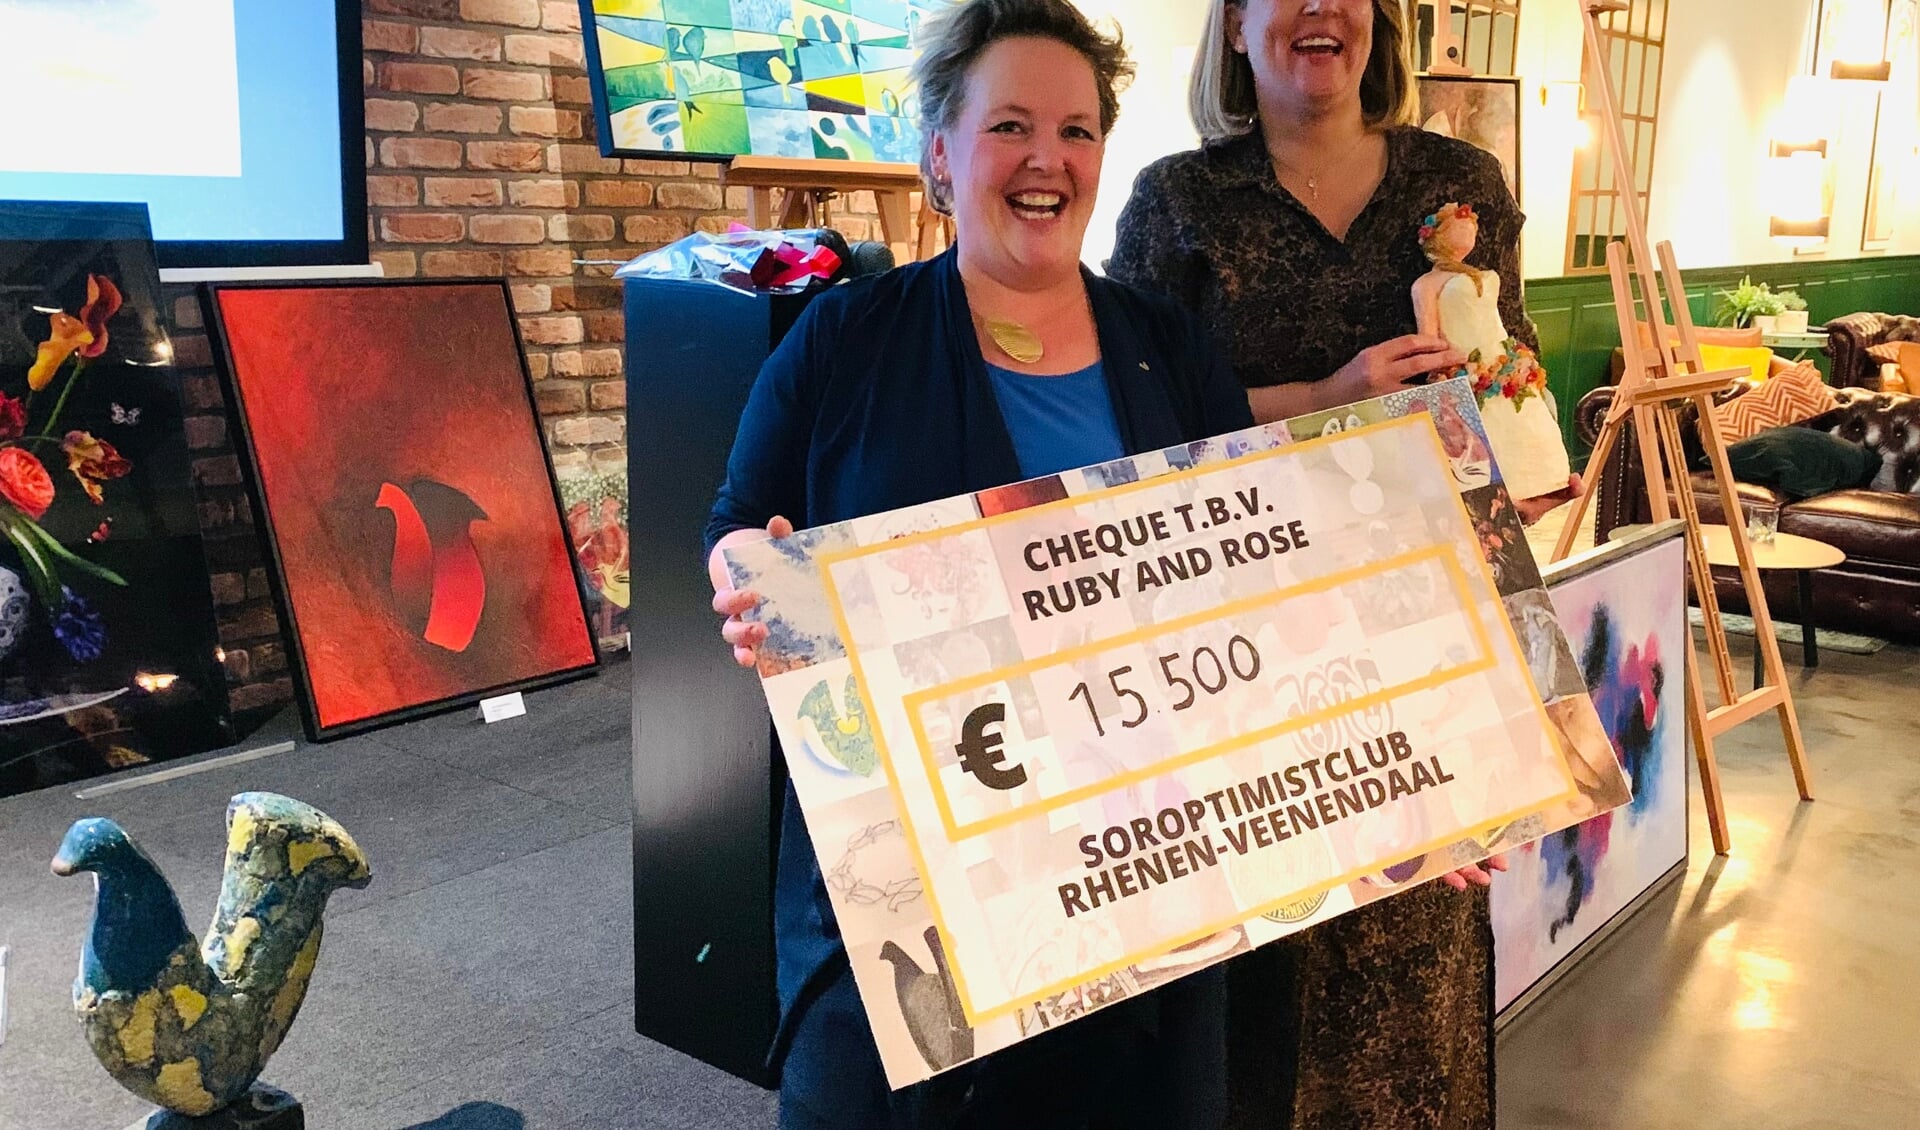 Margriet Wienecke, voorzitter Soroptimistclub Rhenen-Veenendaal overhandigt de cheque van € 15.500 aan Pamela Hoetelmans, voorzitter Ruby and Rose